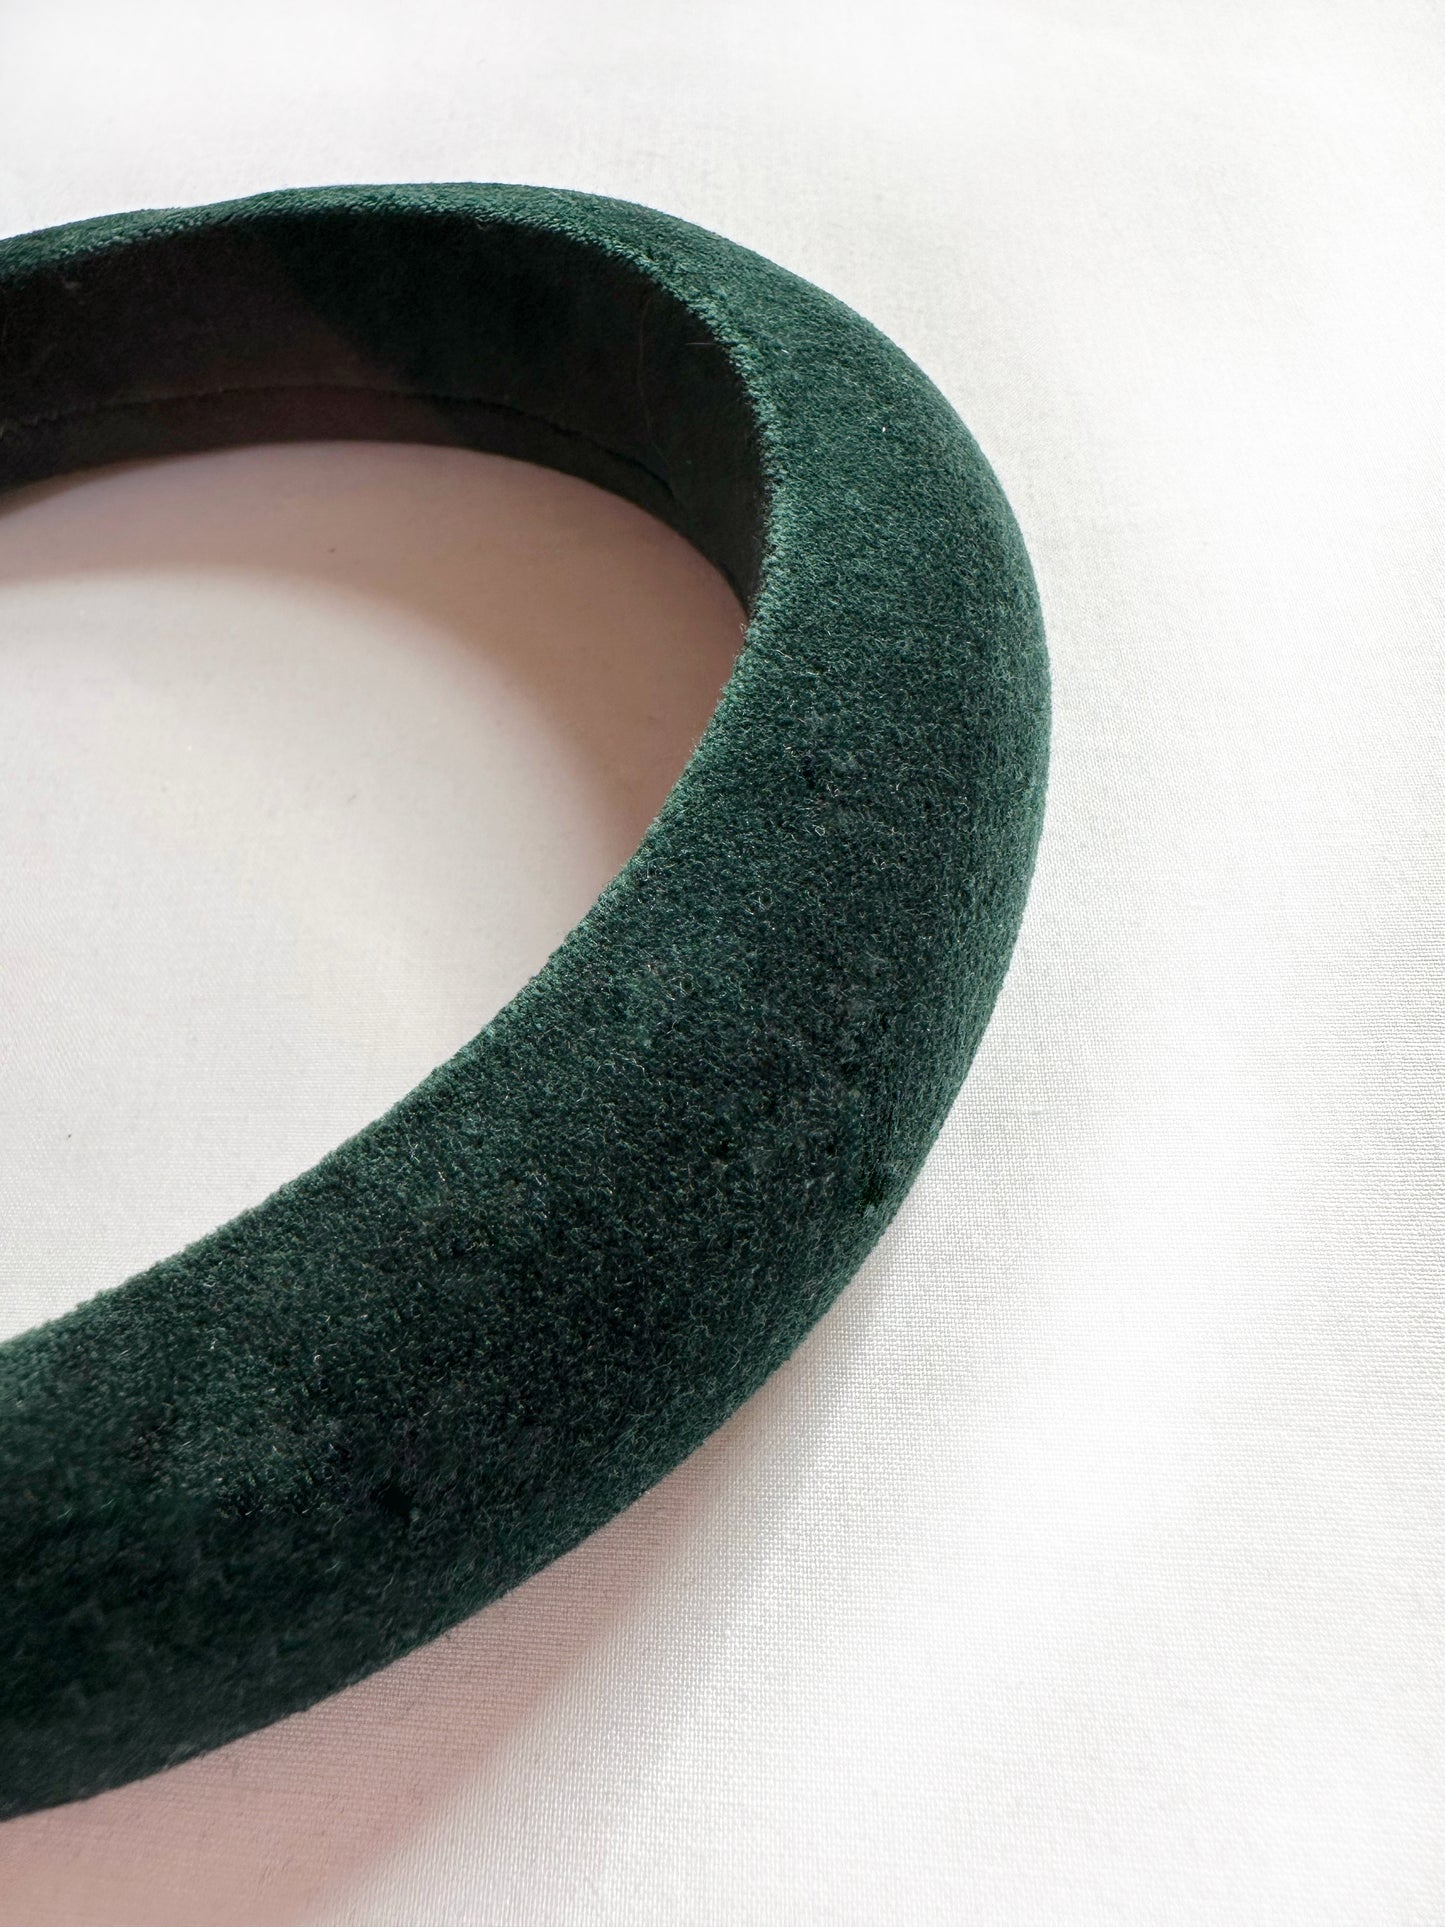 Padded headband in hunter green velvet